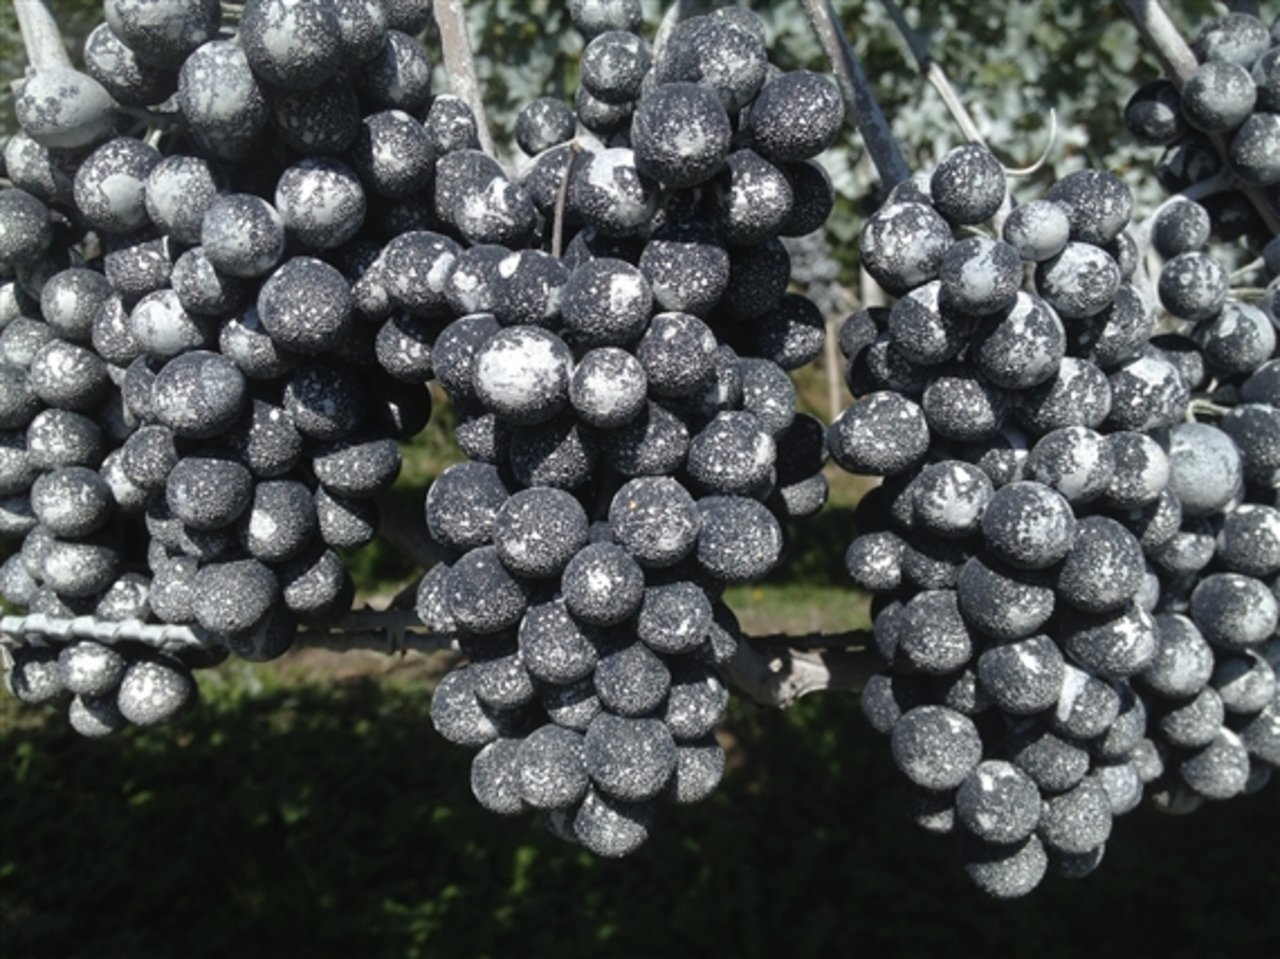  Weisser Belag auf den Trauben kurz vor der Ernte: Das Ton-Präparat Kaolin wird als Schutzbelag gegen die Kirschessigfliege eingesetzt. (Bild zVg) 